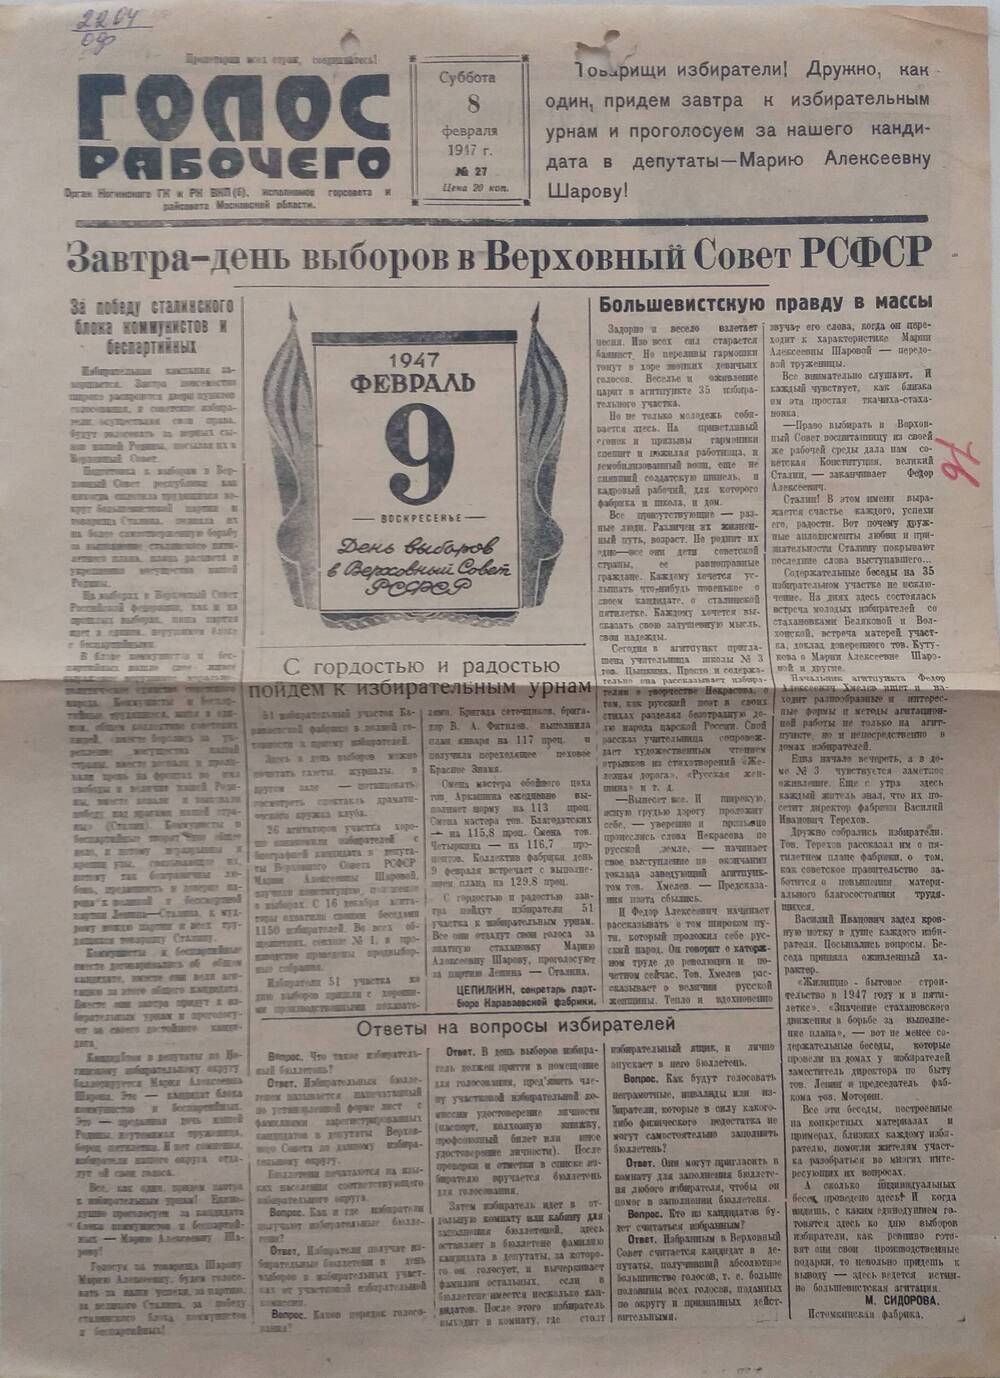 Газета Голос рабочего № 27  орган Ногинского ГК и РК ВКП (б), исполкома горсовета и райсовета Московской области, от 8 февраля 1947 года.